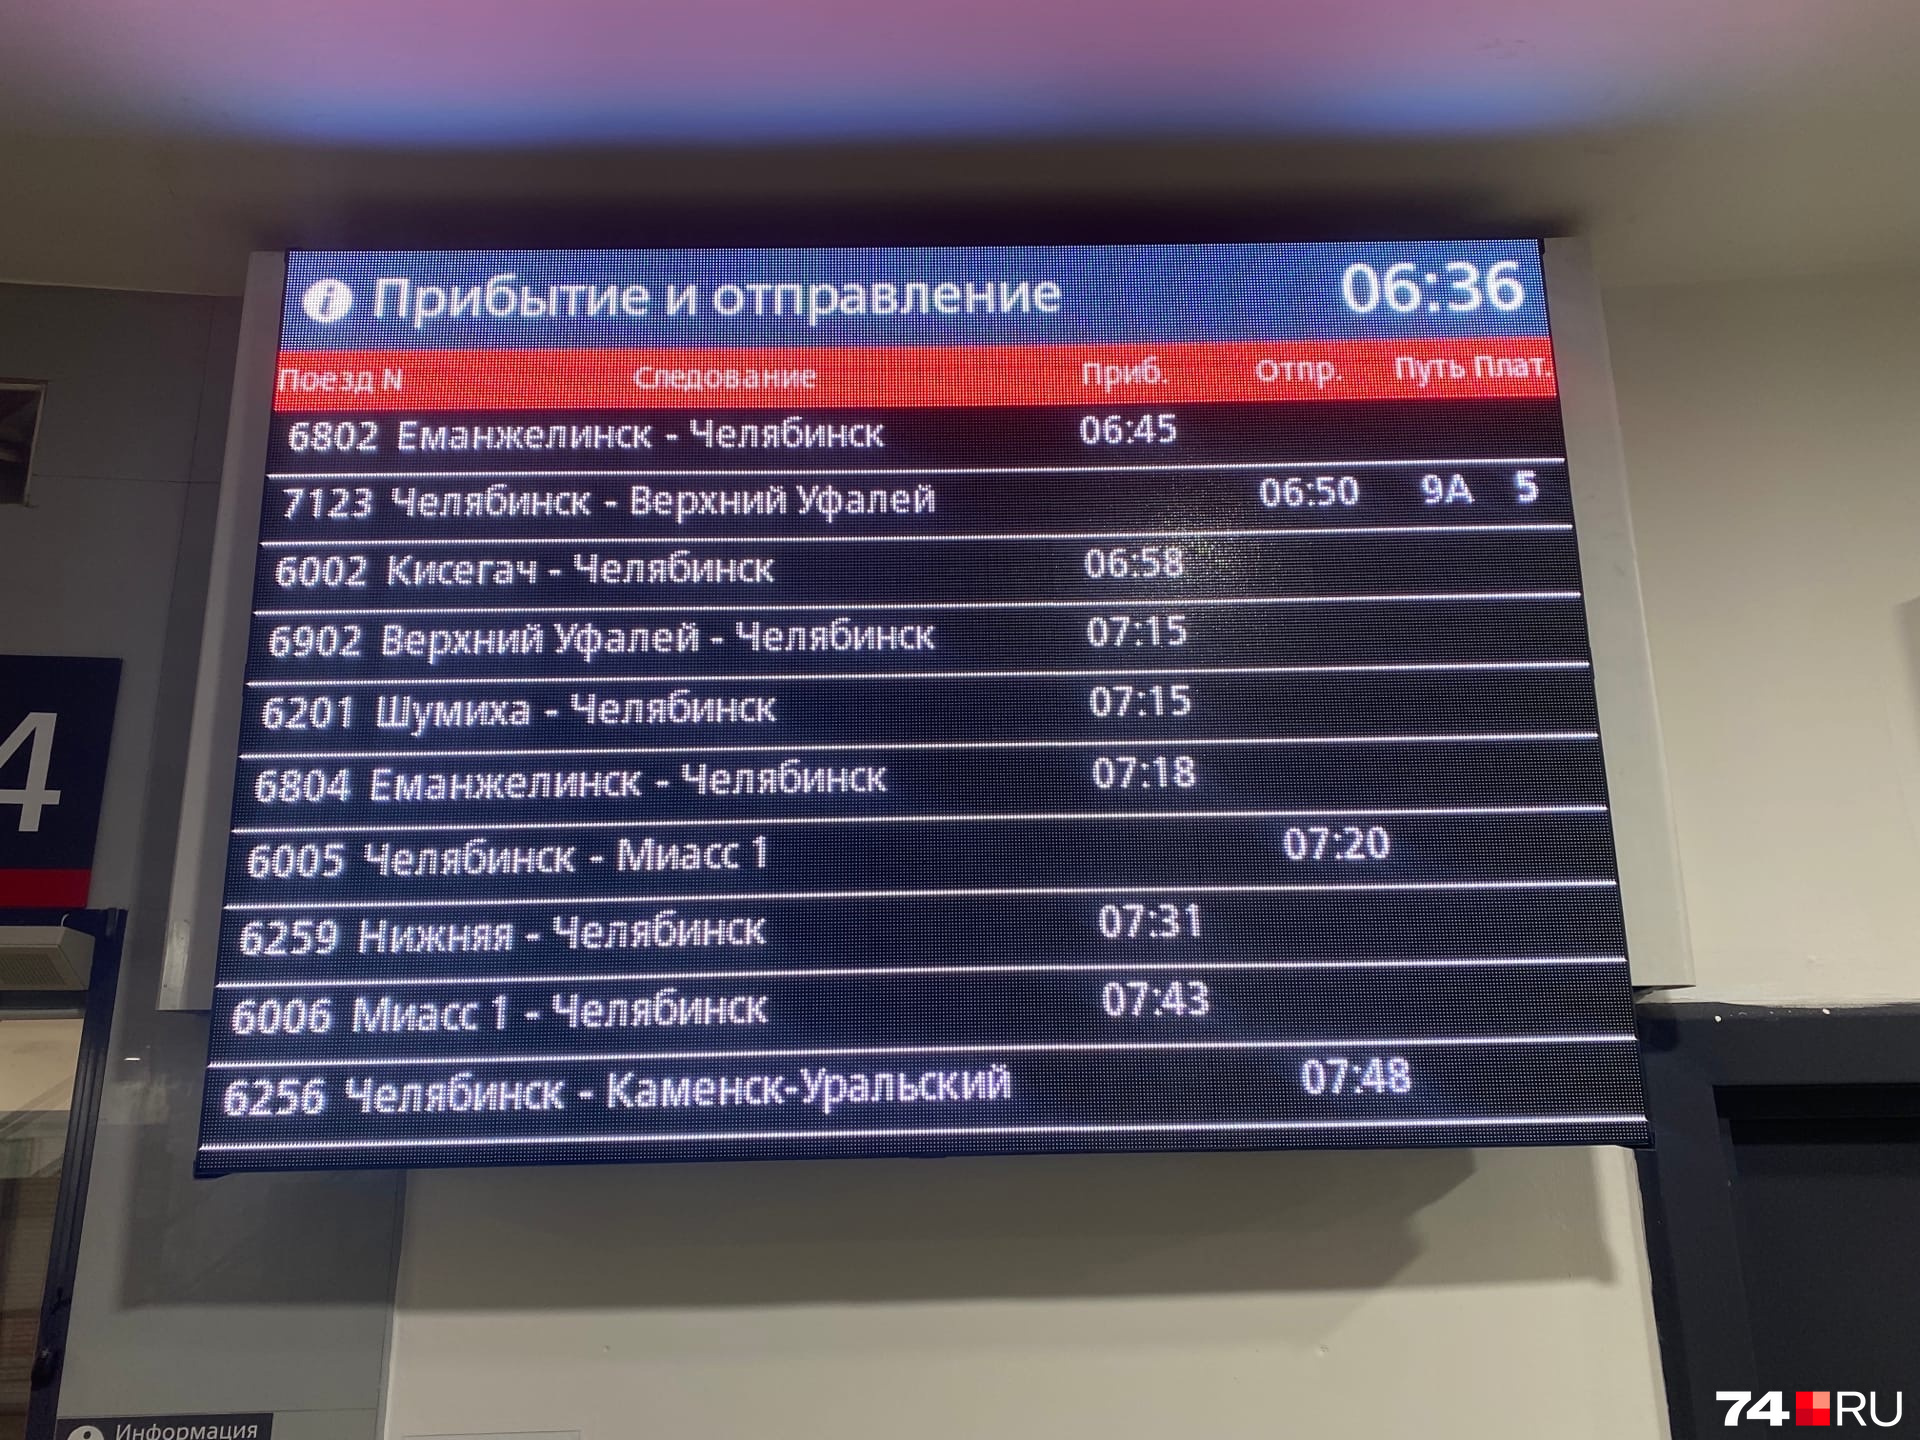 Екатеринбург расписание скоростной электрички